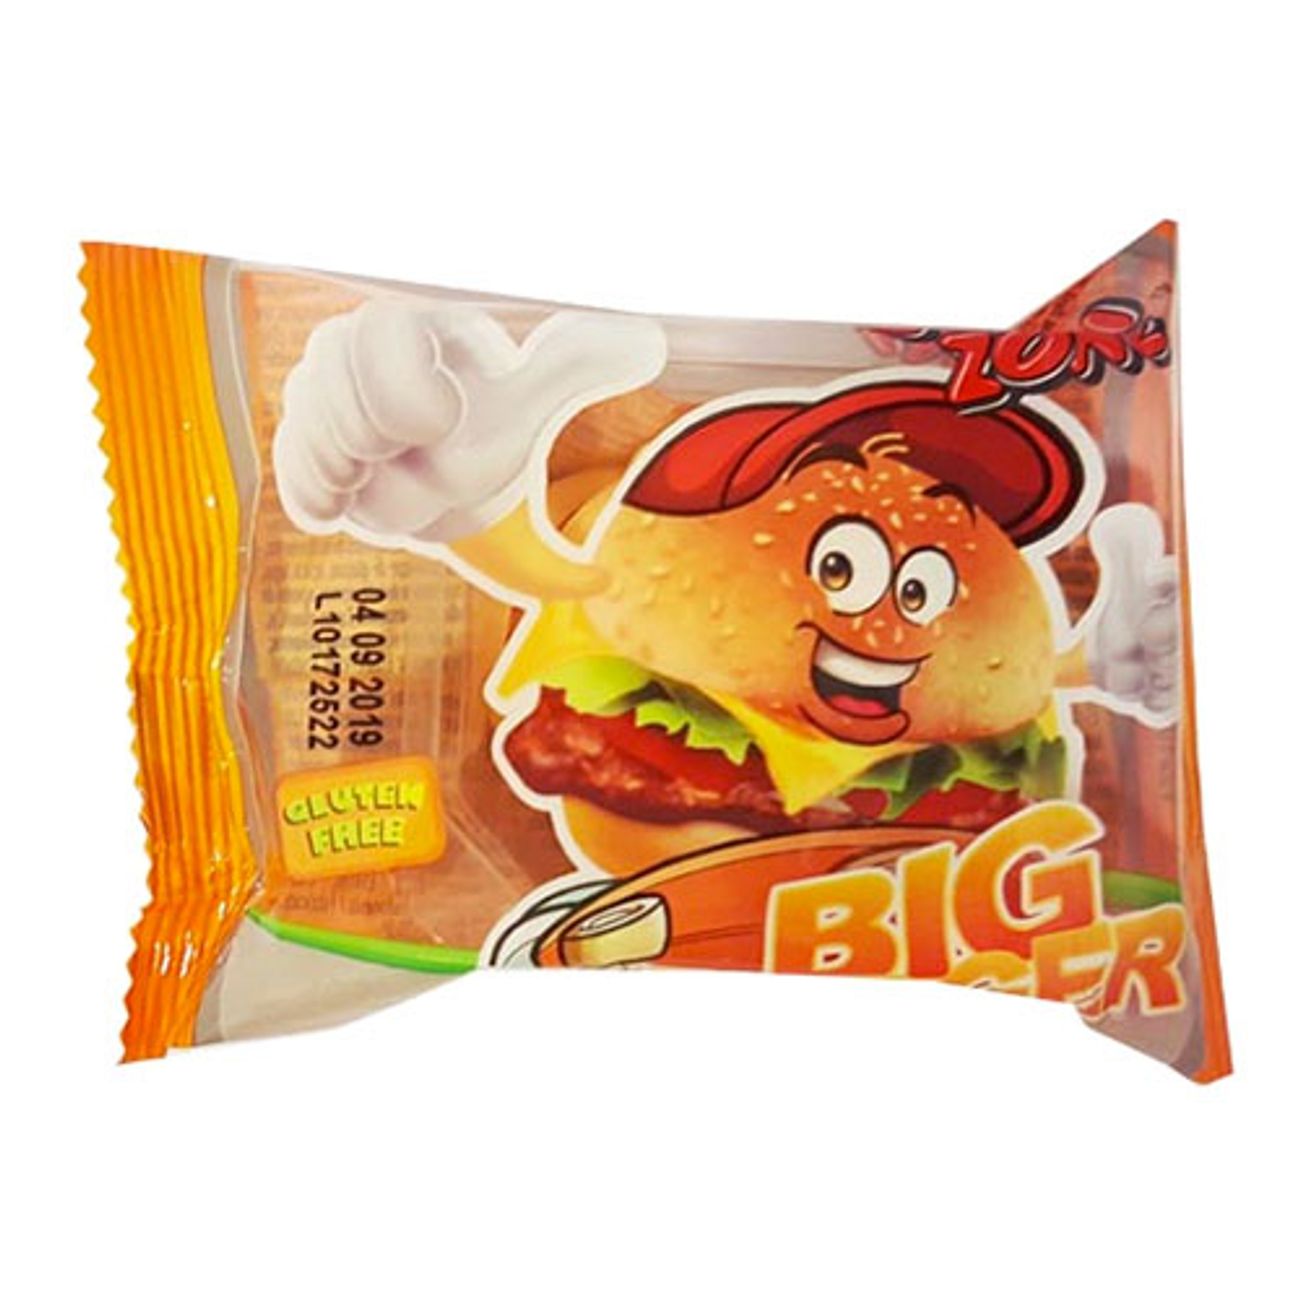 big-burger-godisburgare-1